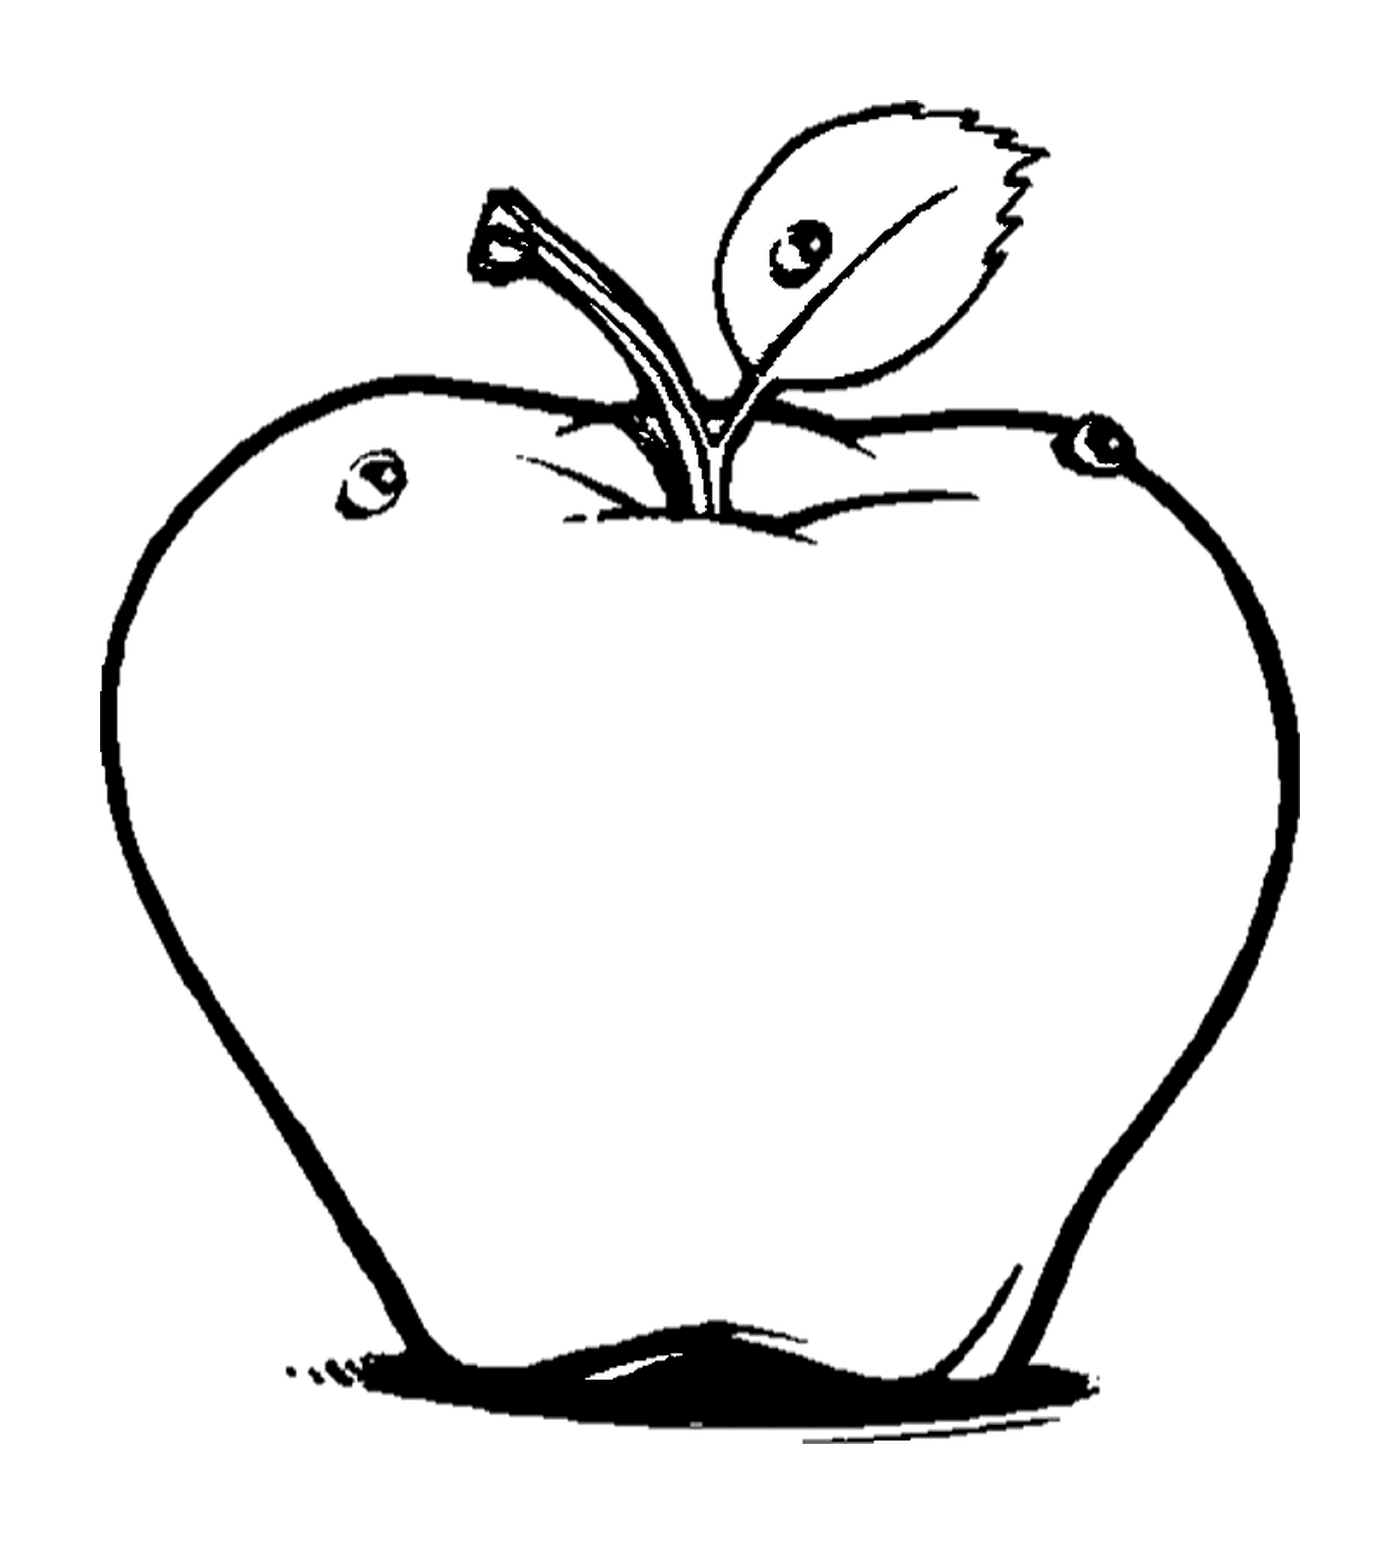  maçã desenhada 